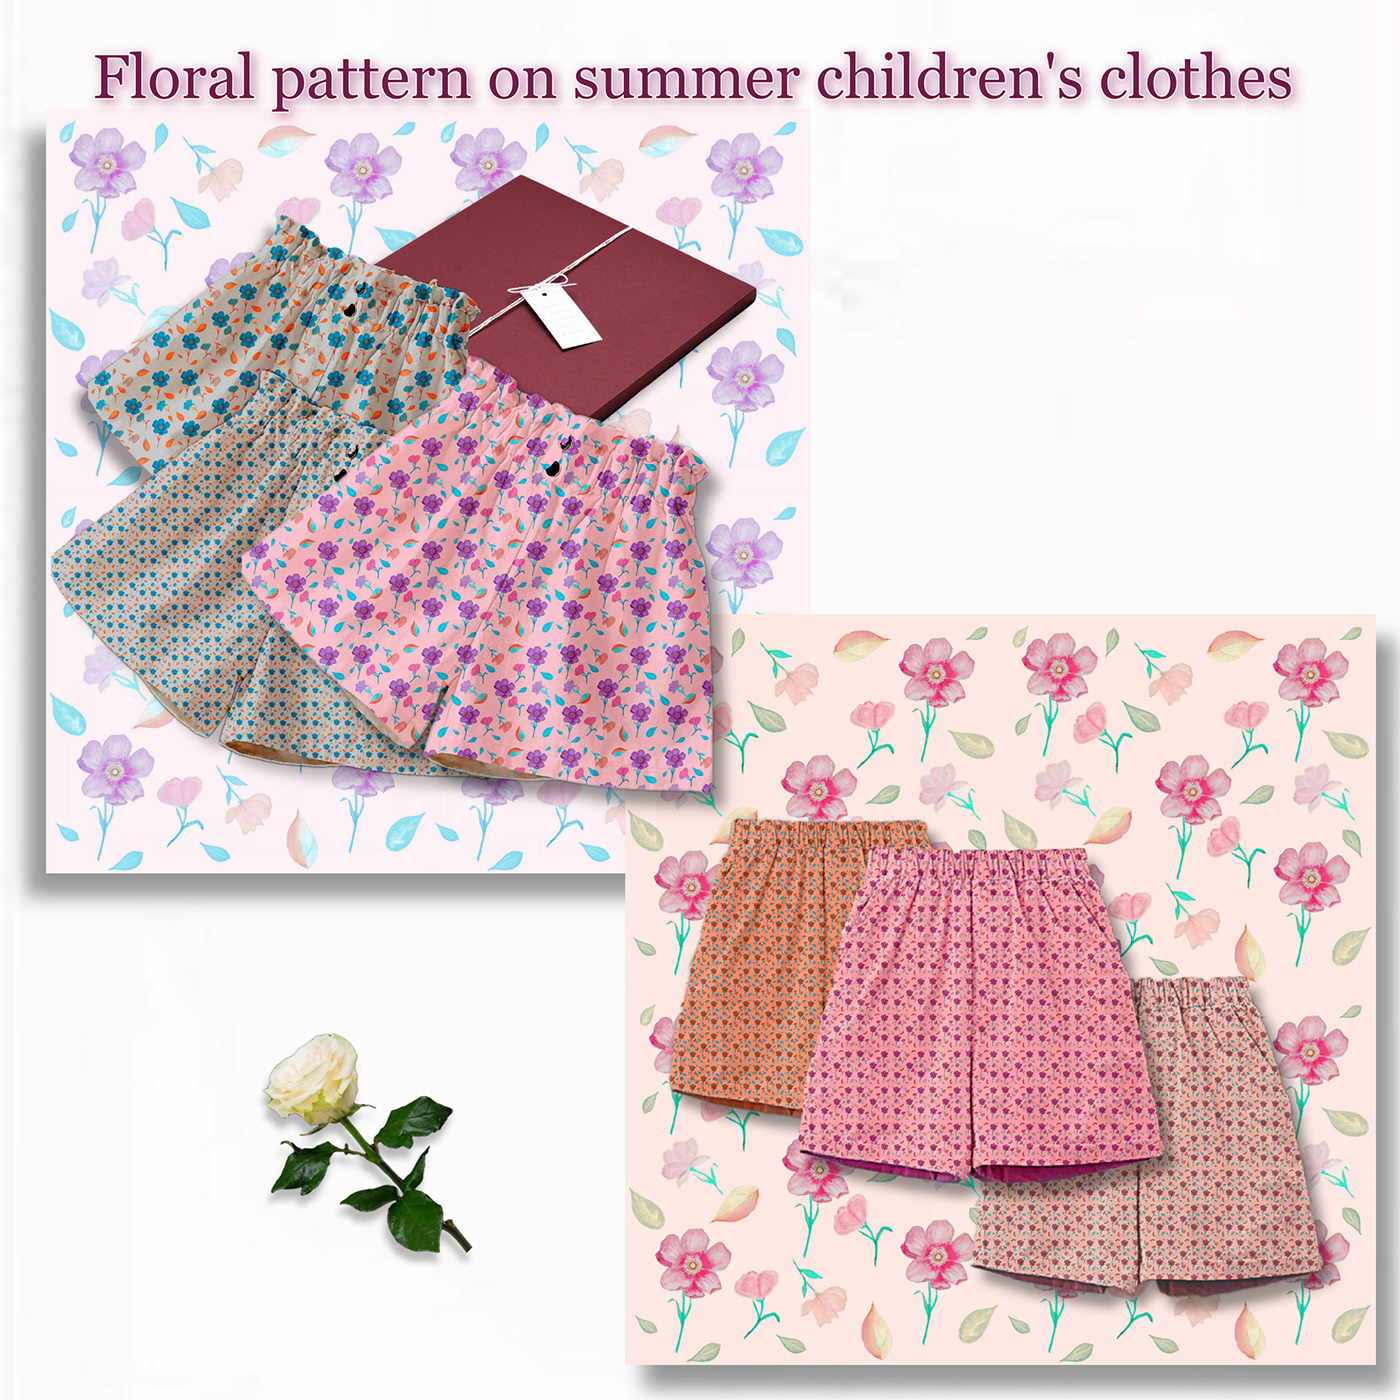 print print design  prints floral pattern Flowers floral textile pattern design  Patterns illustrations